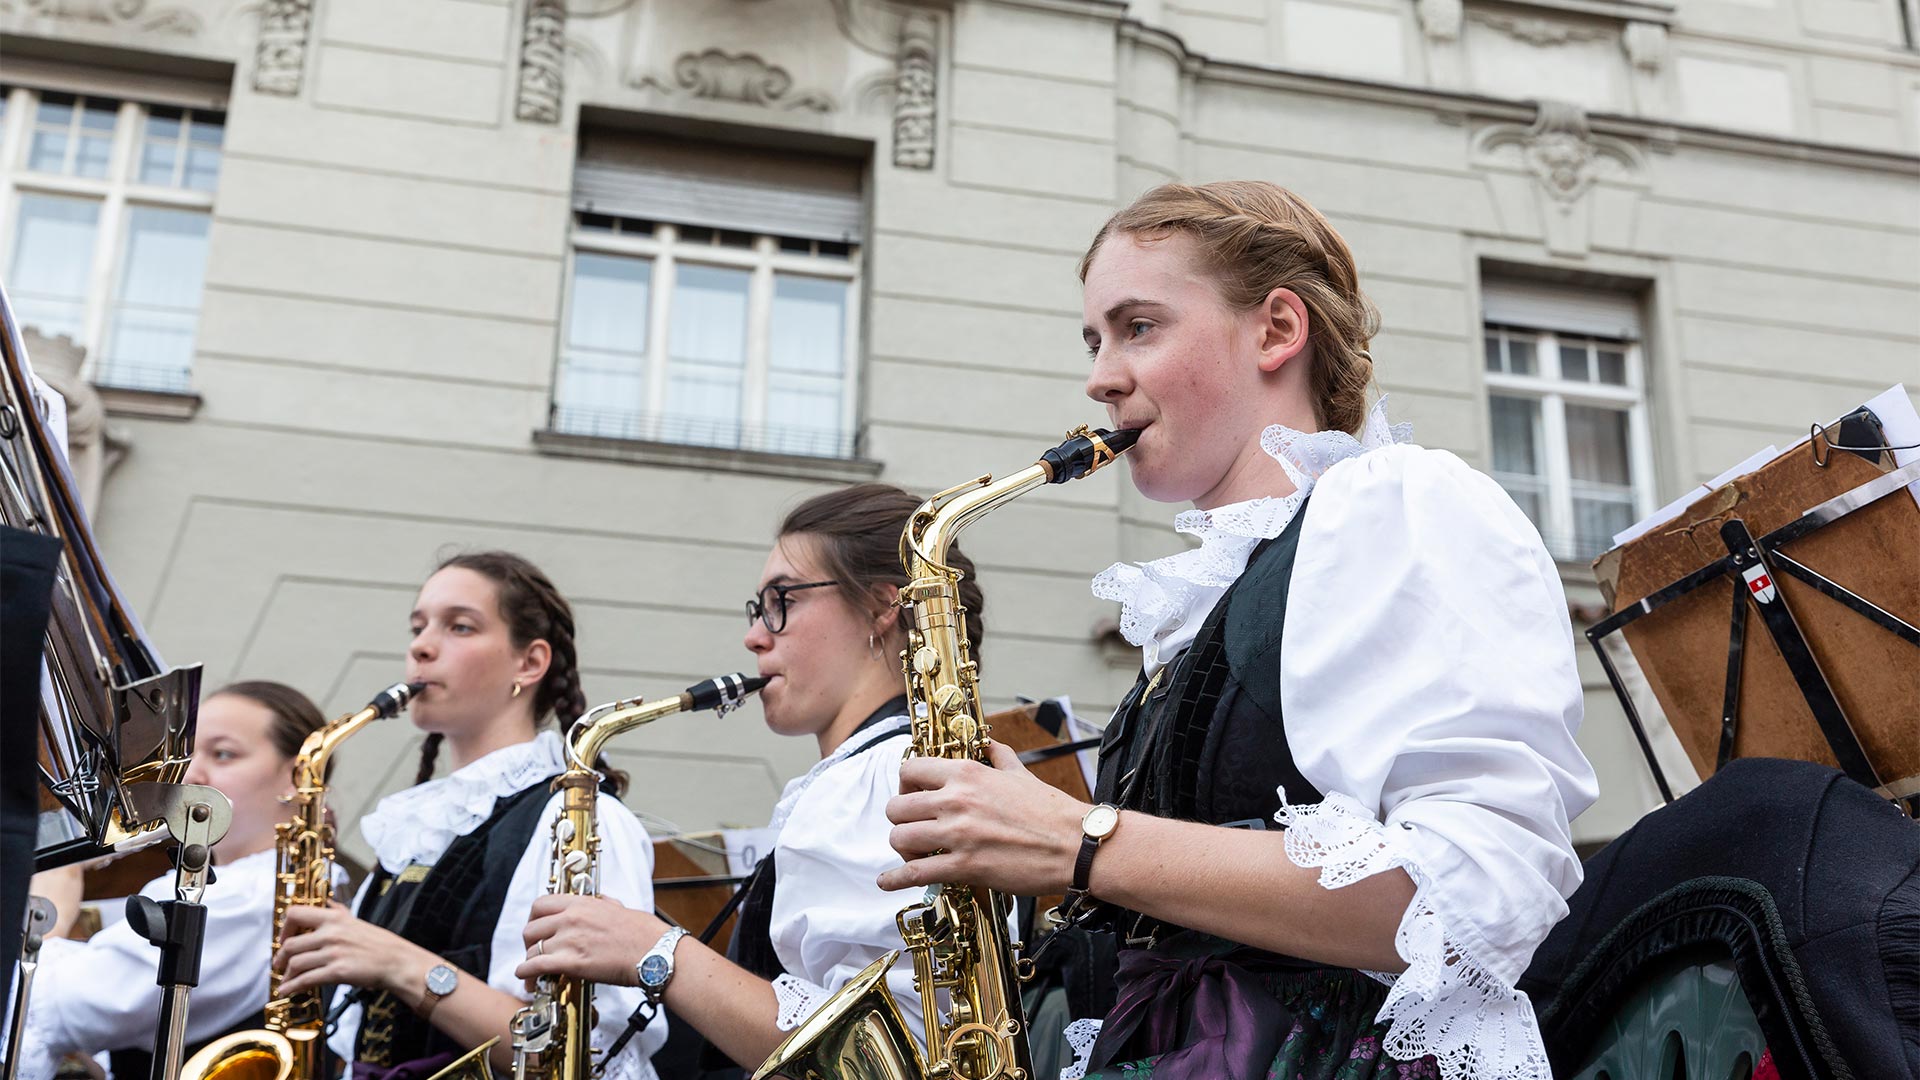 Im Vordergrund spielt ein Teil der Südtiroler Musikkapelle bei einer Musikveranstaltung in der Stadt Blasinstrumente.